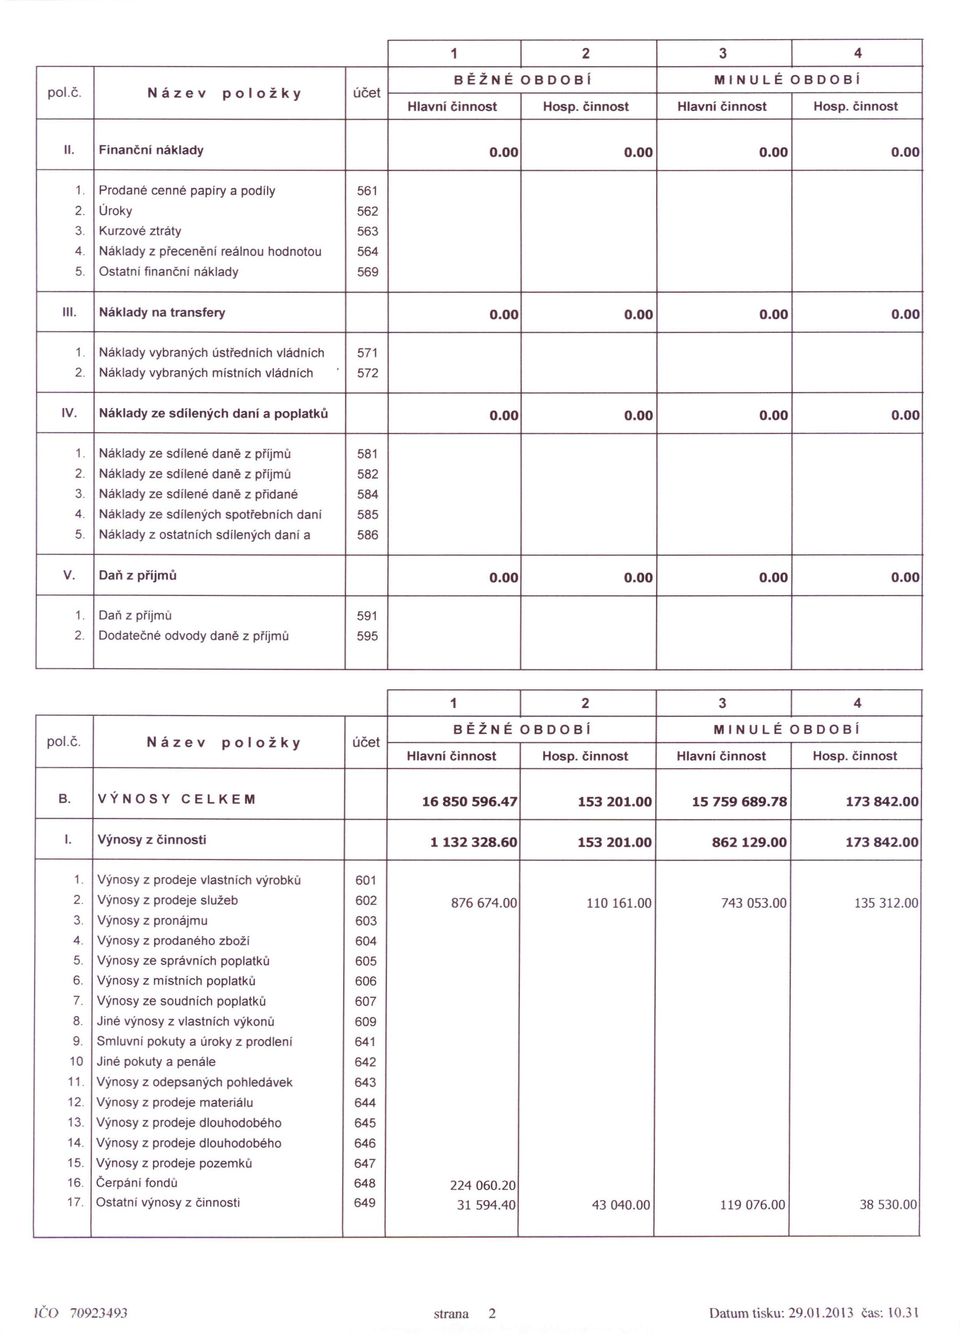 Náklady vybraných místních vládních 572 IV. Náklady ze sdílených daní a poplatků 0.00 0.00 0.00 0.00 1. Náklady ze sdílené daně z příjmů 581 2. Náklady ze sdílené daně z příjmů 582 3.